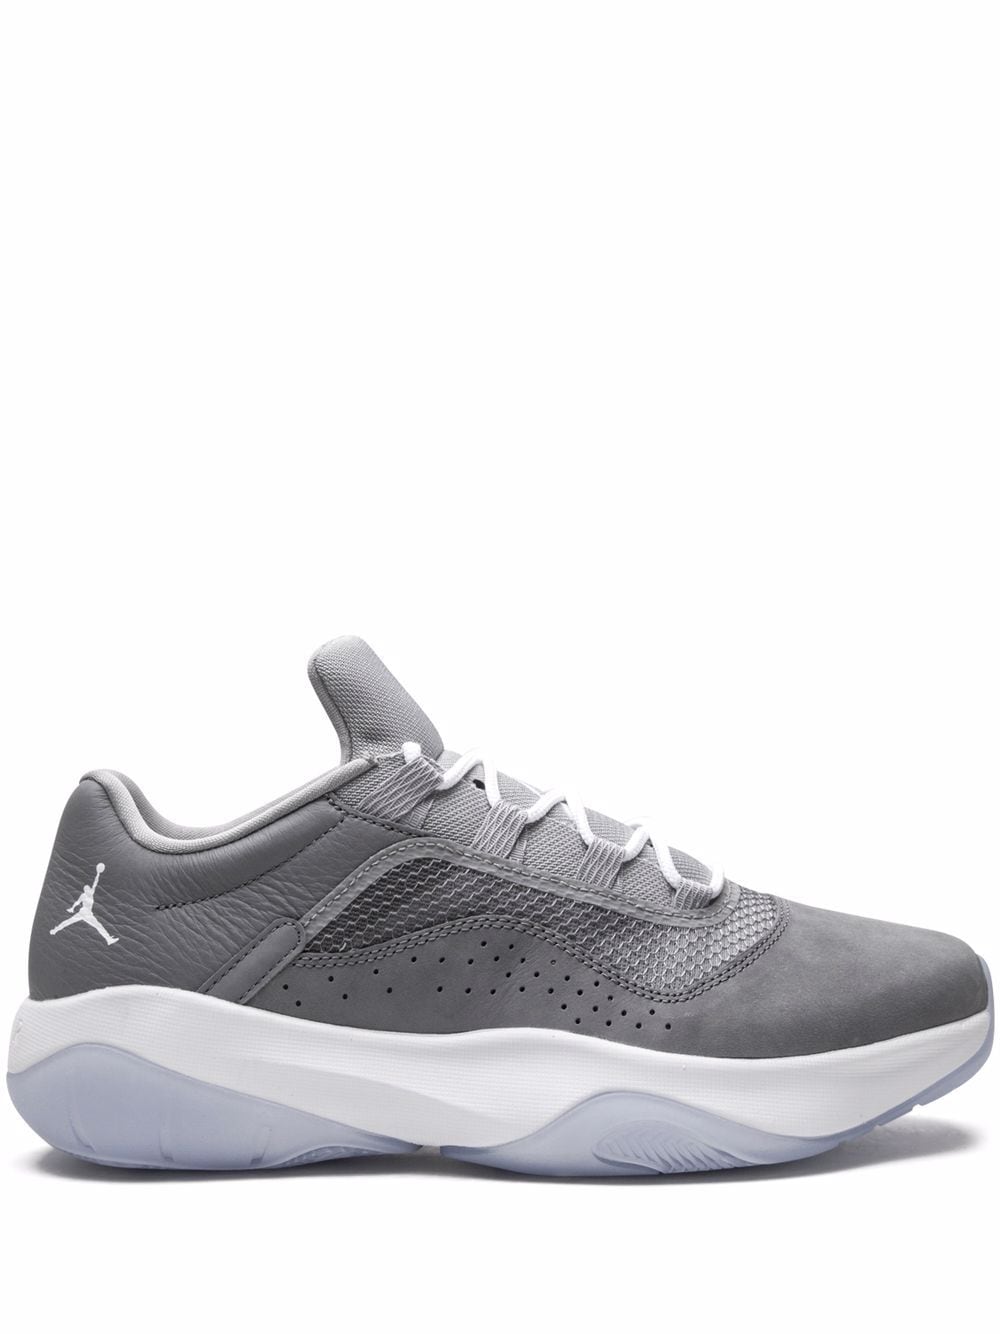 Image 1 of Jordan Air Jordan 11 CMFT Low "Cool Grey" sneakers